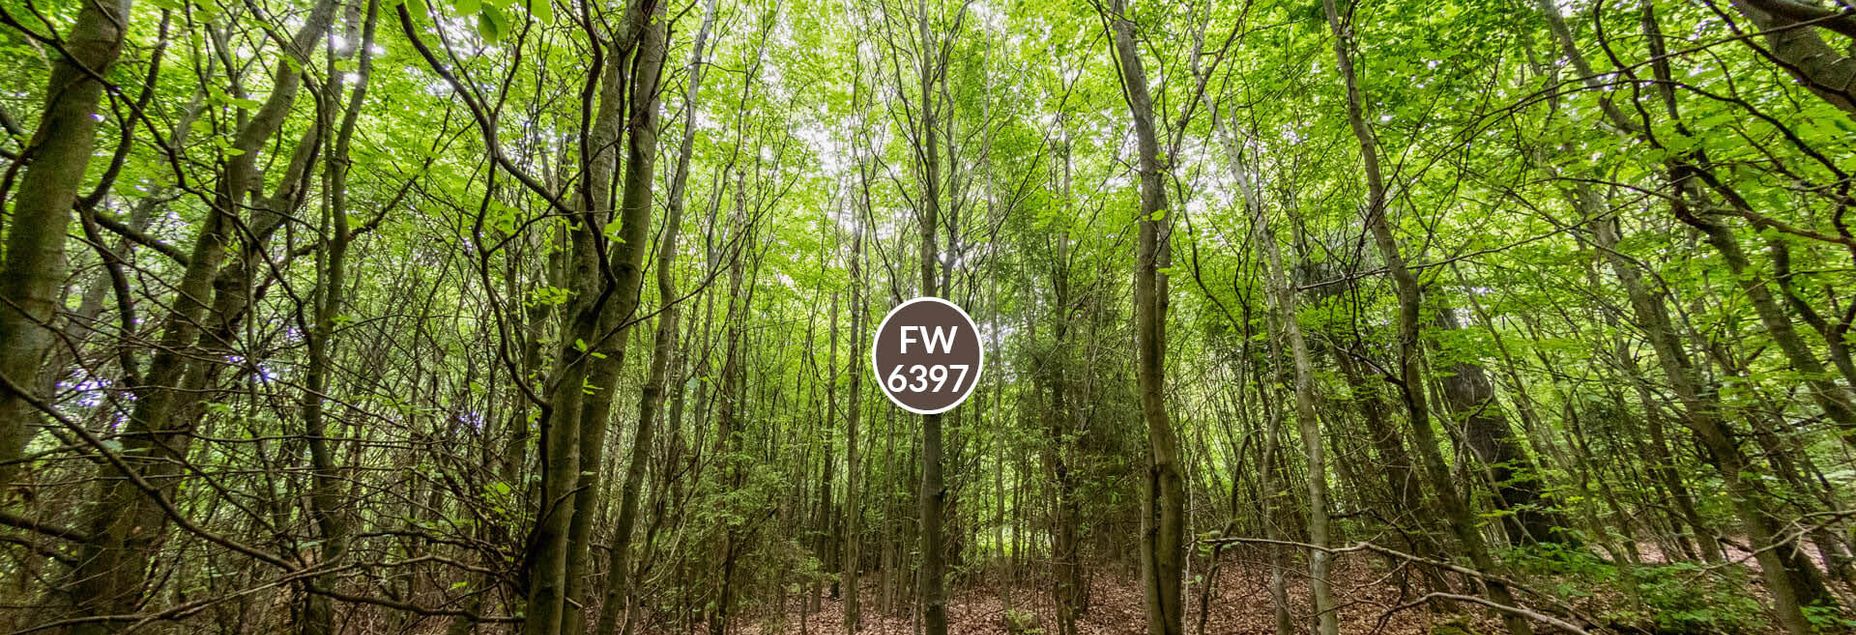 Baum FW 6397 - Fisheyeperspektive